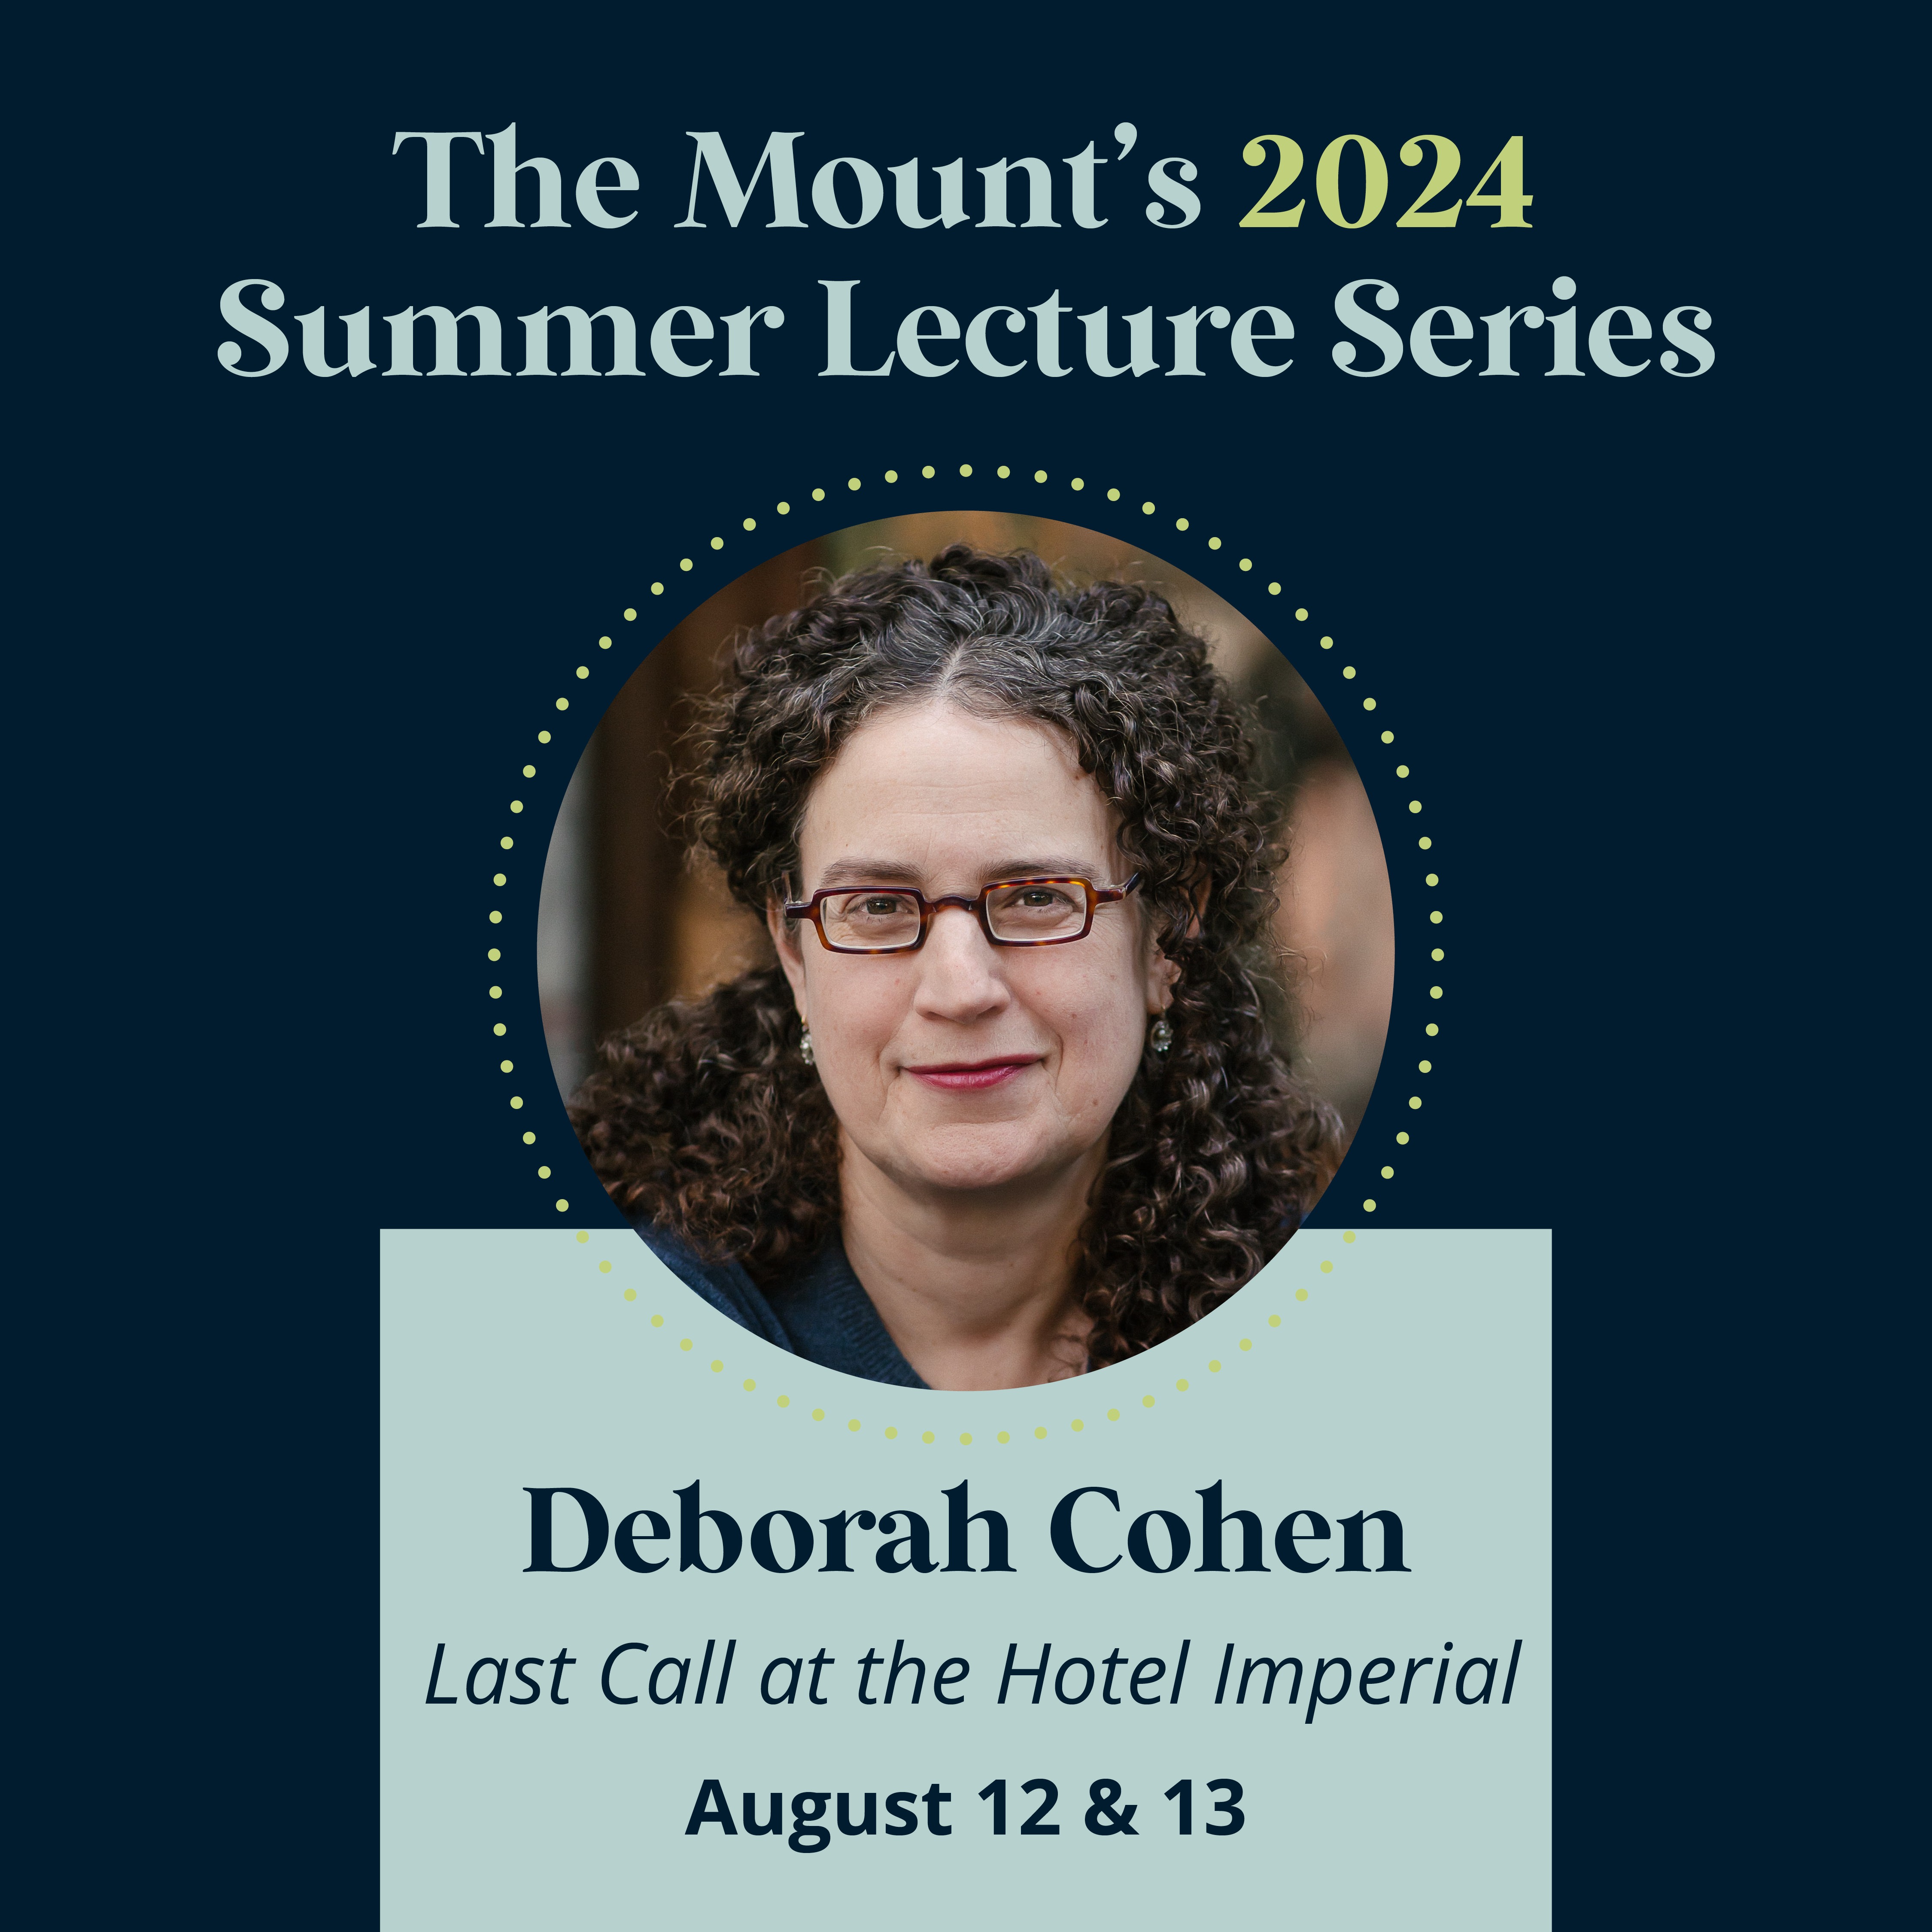 Monday lecture with Deborah Cohen